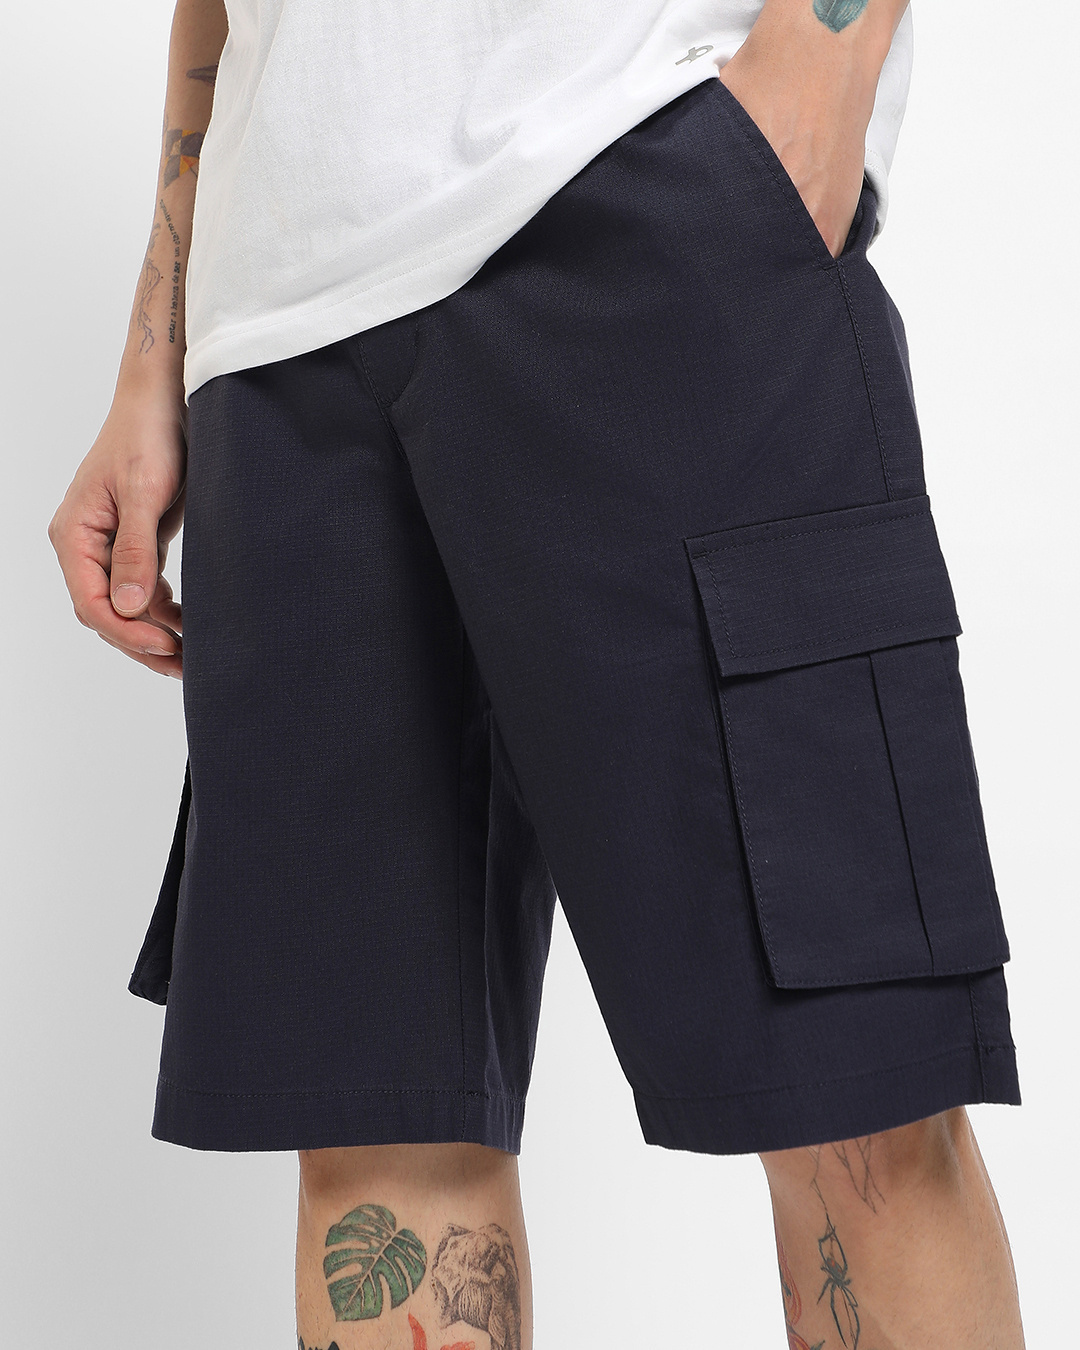 Buy Men's Blue Cargo Shorts Online at Bewakoof